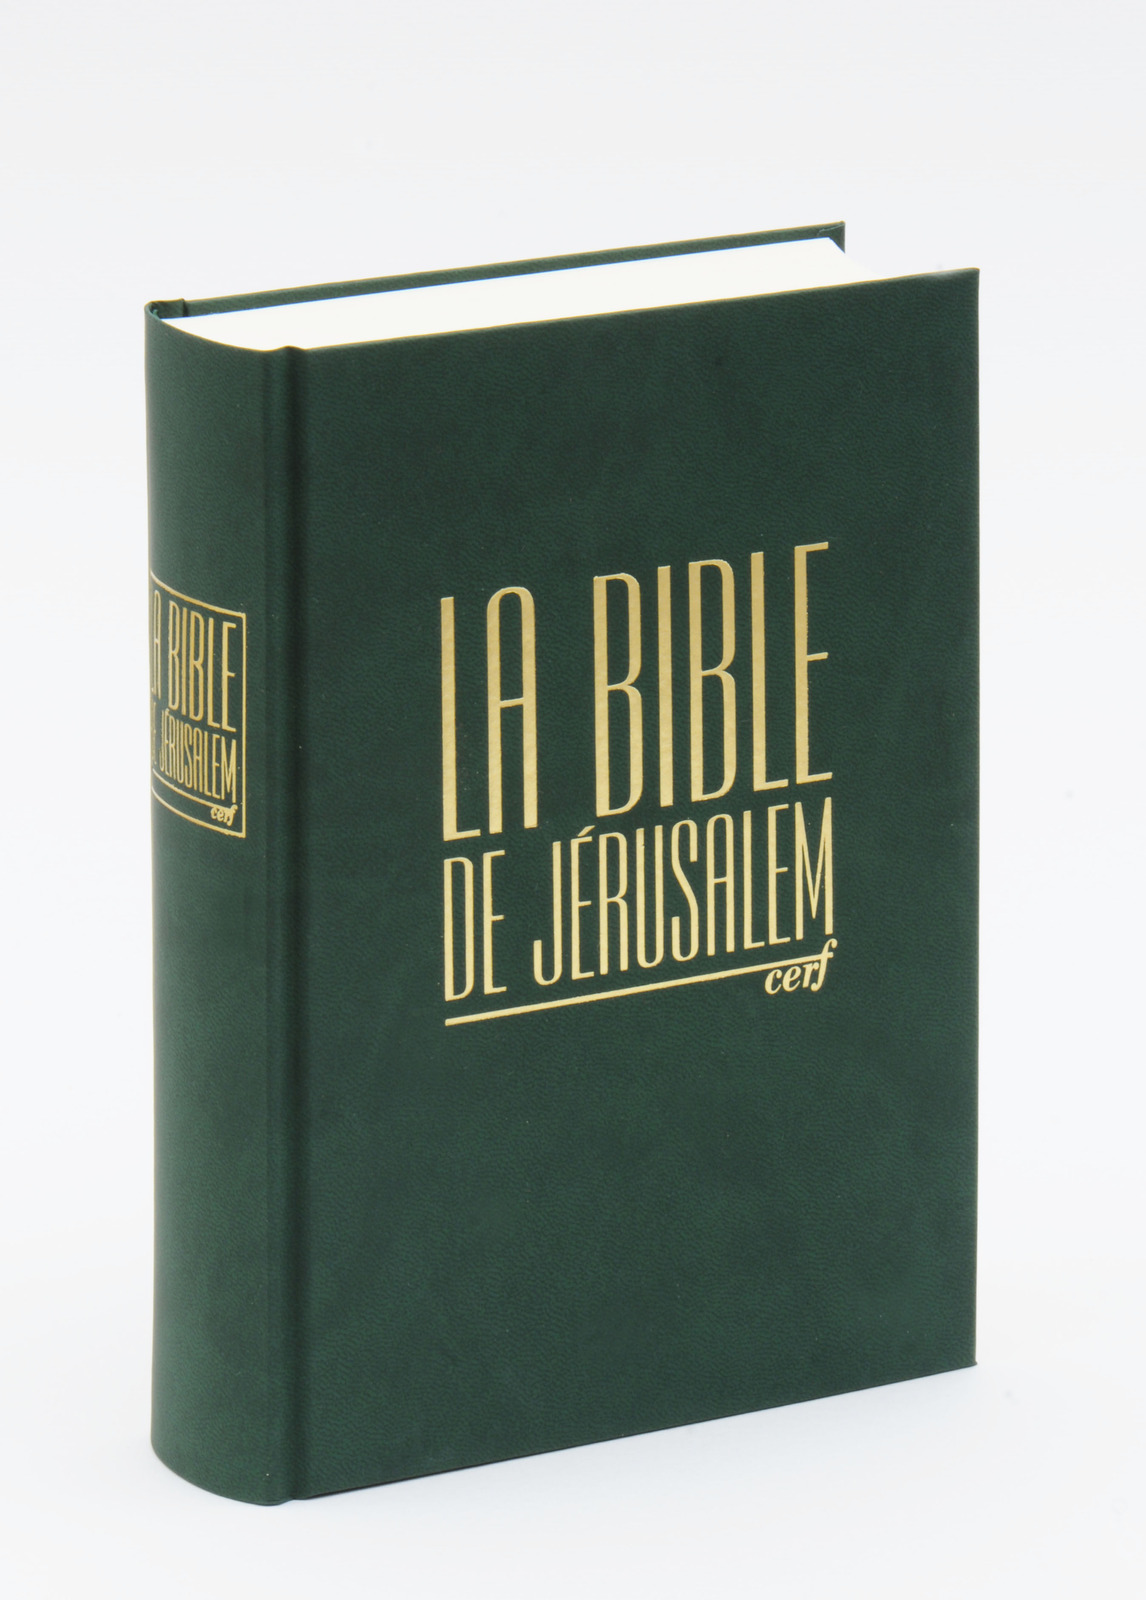 Bible de Jérusalem compacte, reliée verte